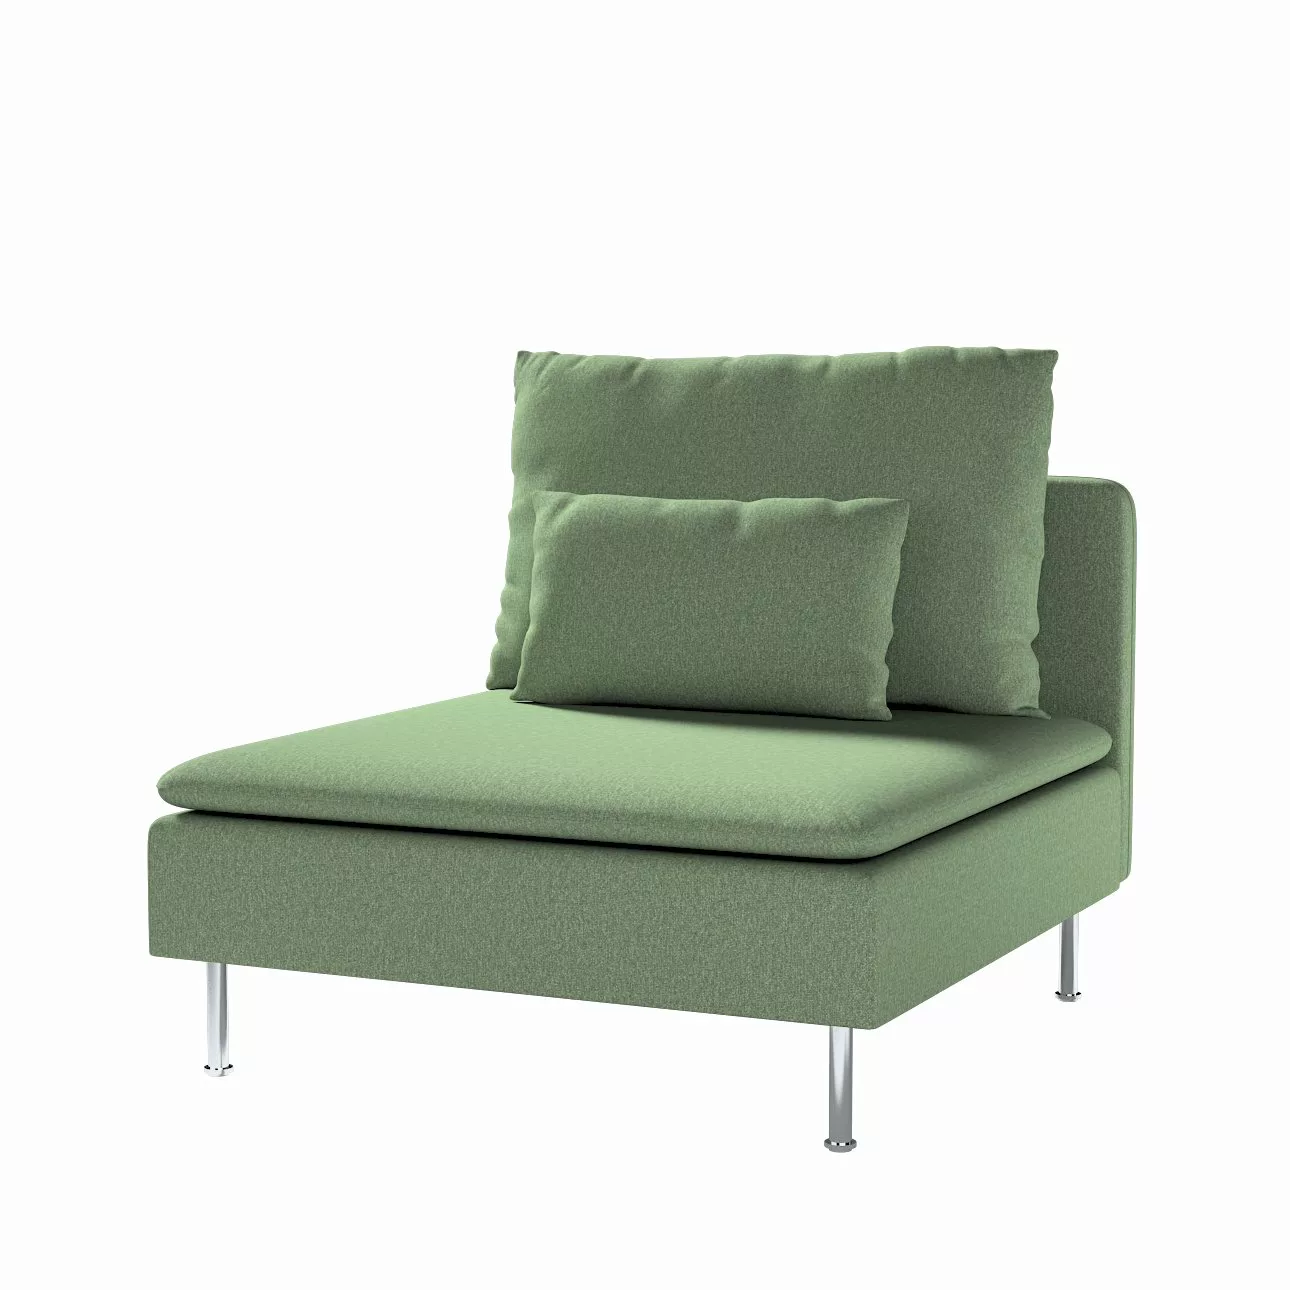 Bezug für Söderhamn Sitzelement 1, grün, Bezug für Sitzelement 1, Amsterdam günstig online kaufen